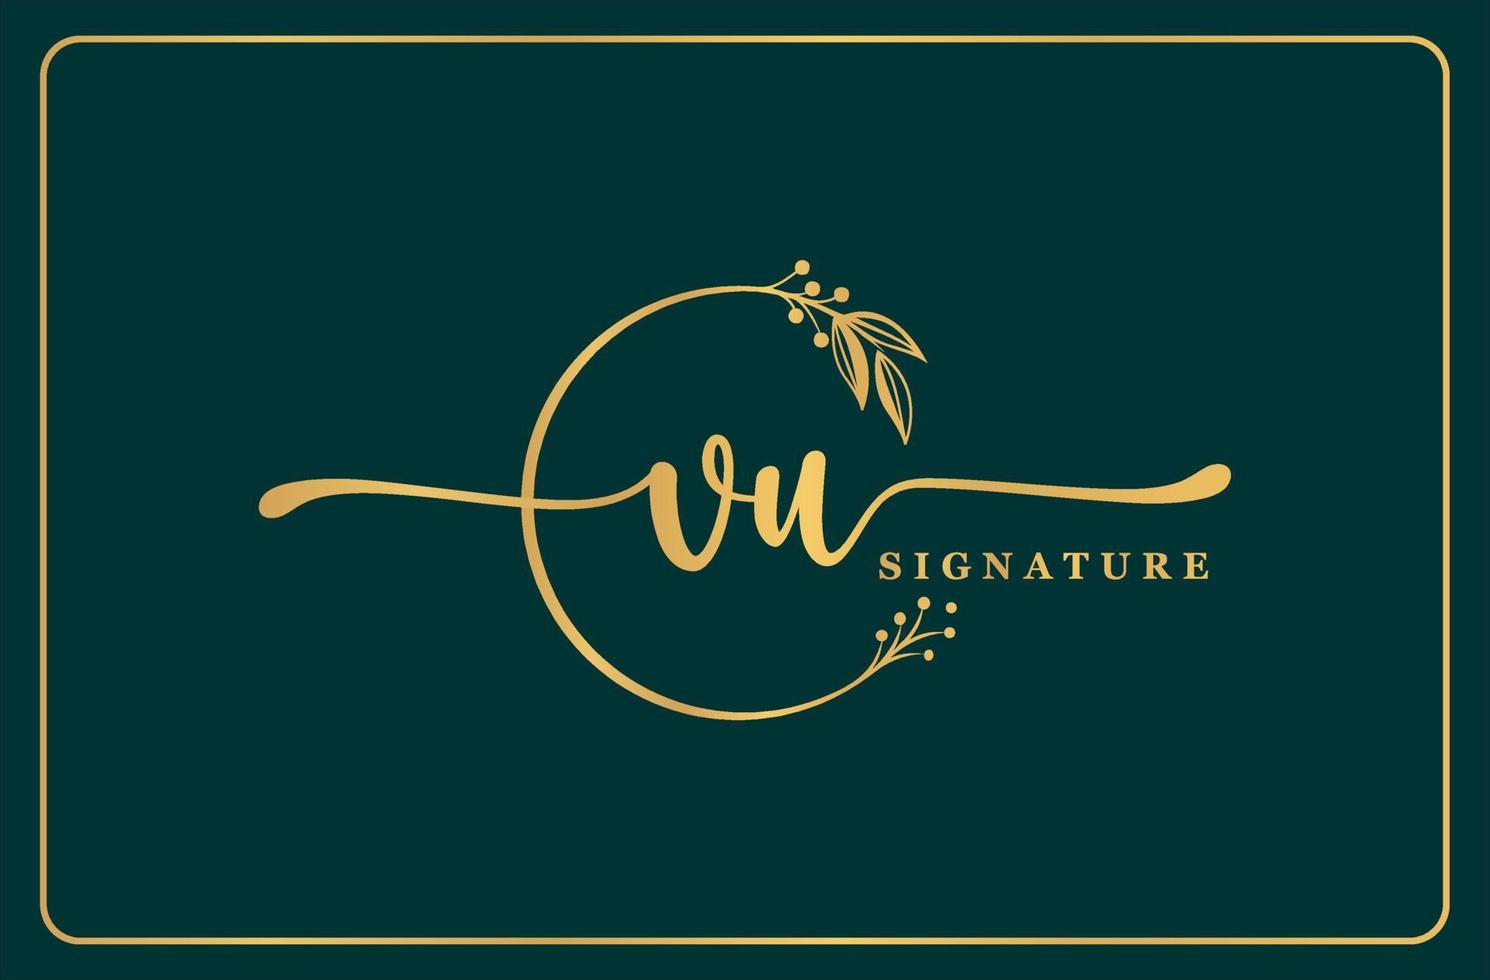 design de logotipo vu inicial de assinatura de ouro de luxo folha e flor isoladas vetor